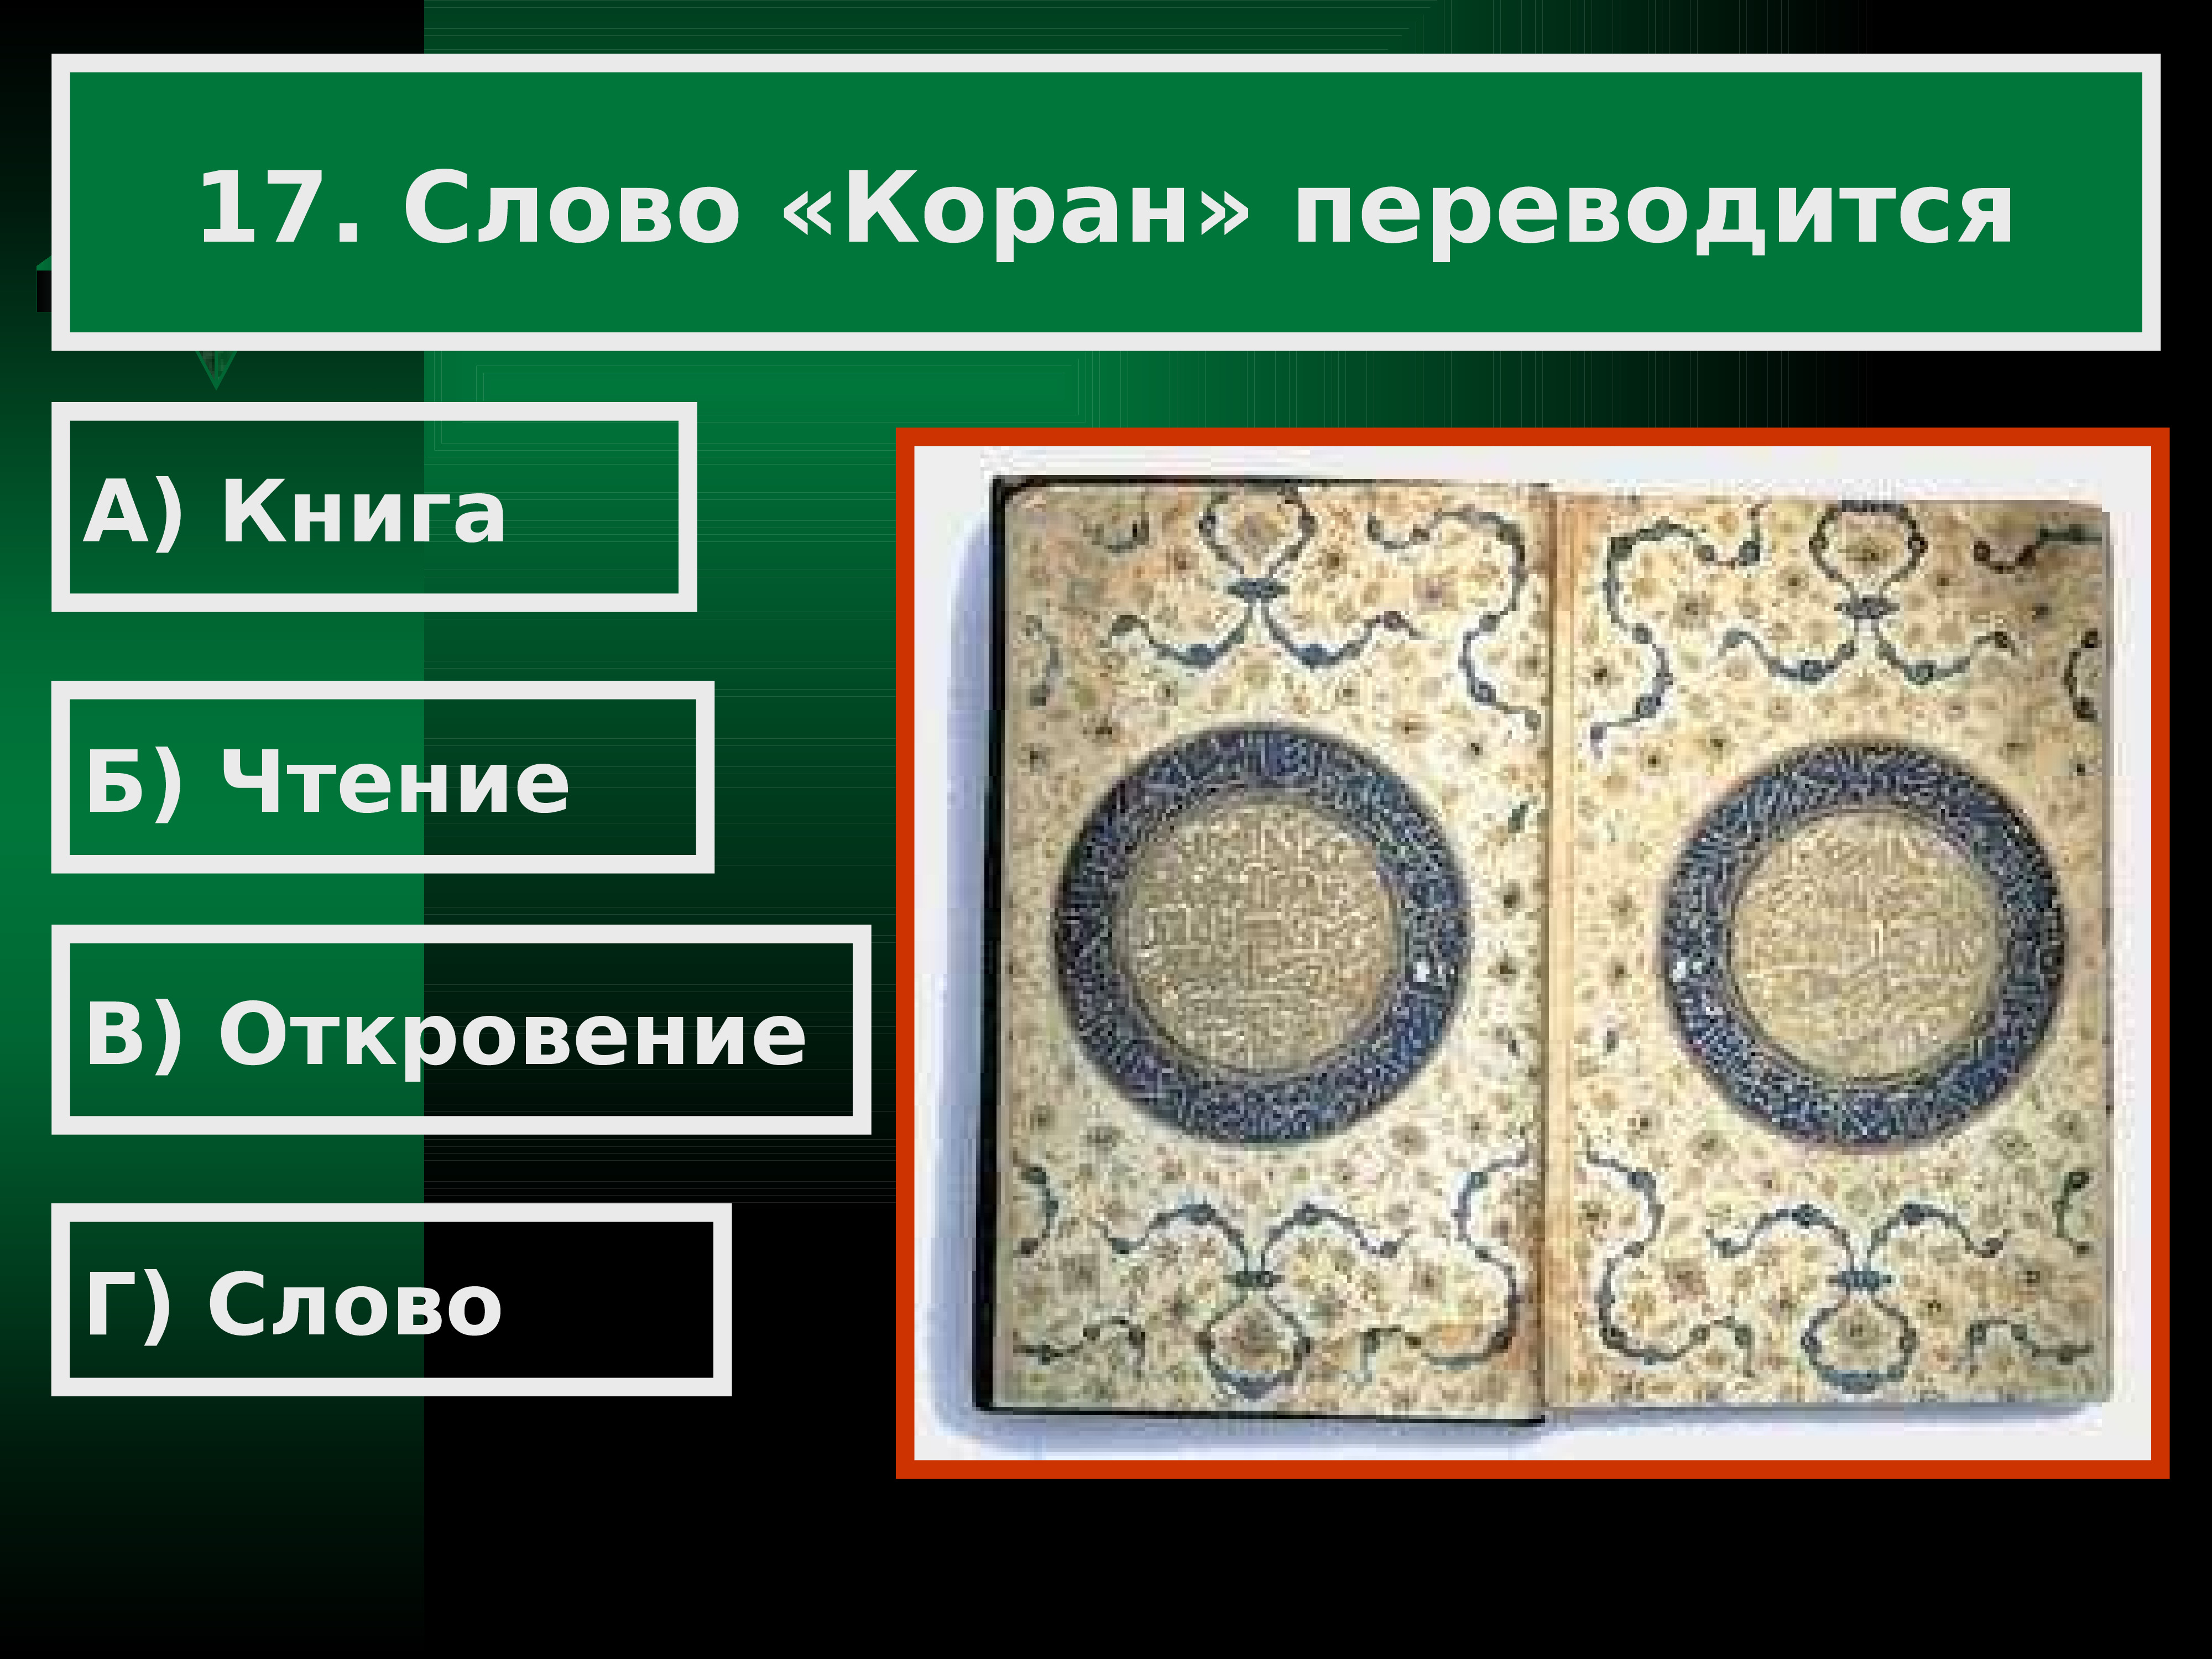 Слова карана. Исламская цивилизация. Тема: арабов 6 11 веках. Как переводится слово Коран одно слово.